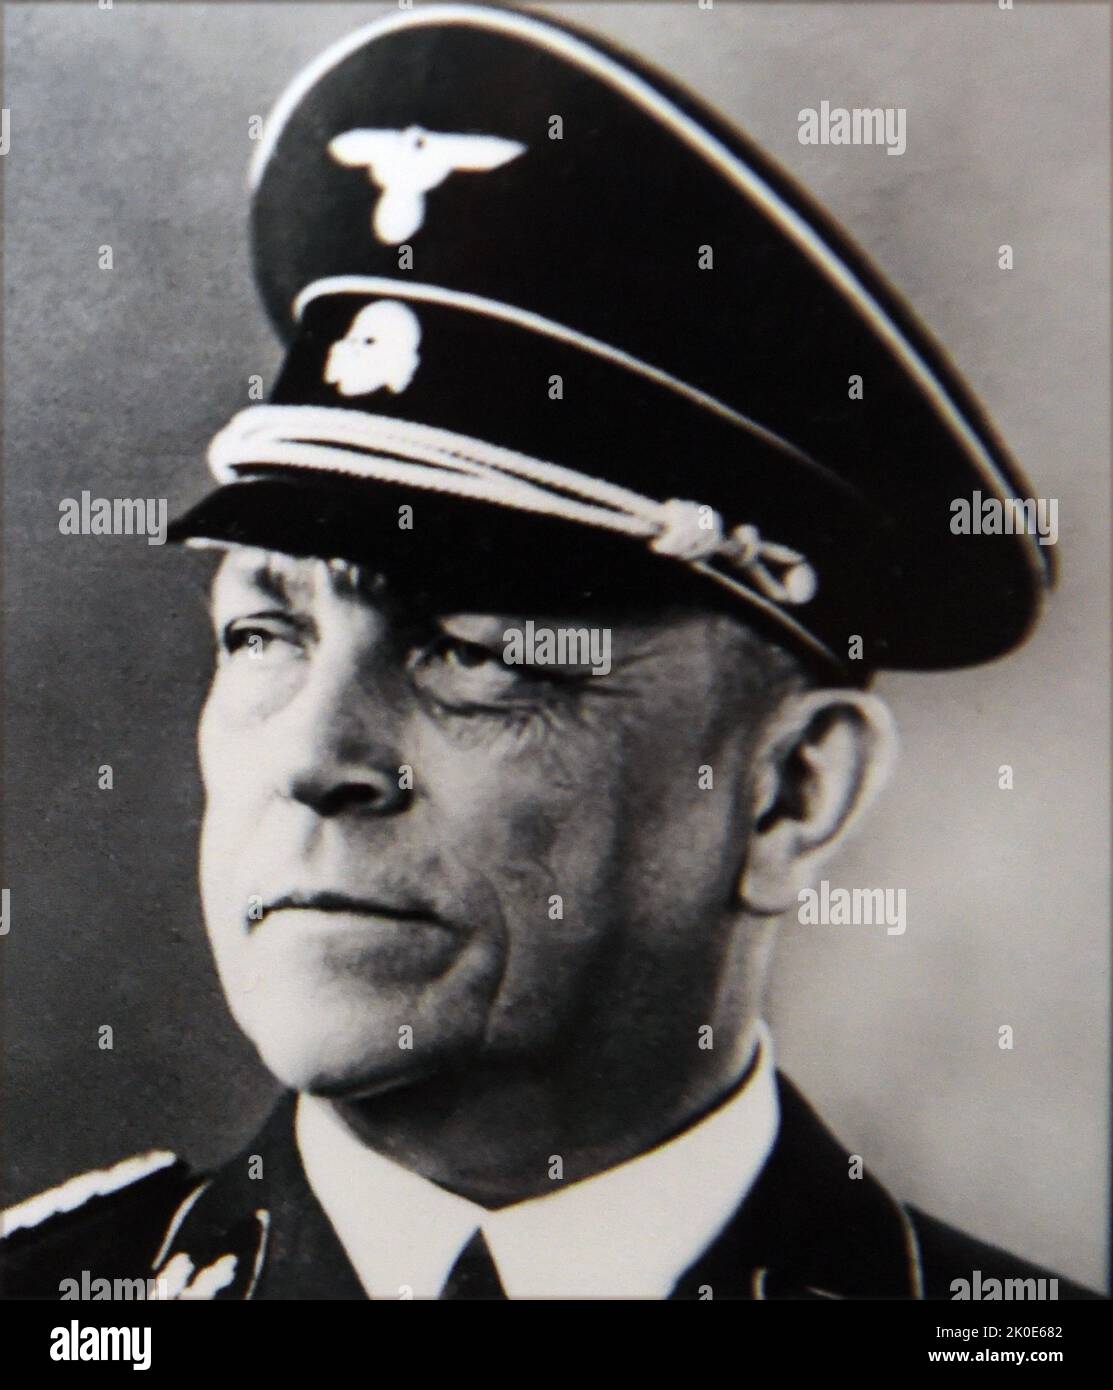 Franz Breithaupt (1880. - 29. April 1945) deutscher SS-Funktionär während der NS-Zeit. Von August 1942 bis April 1945 war er Chef des SS-Hauptgerichts. BREITHAUPT wurde kurz vor Kriegsende in Europa von seinem SS-Adjutanten Karl lang ermordet. Stockfoto